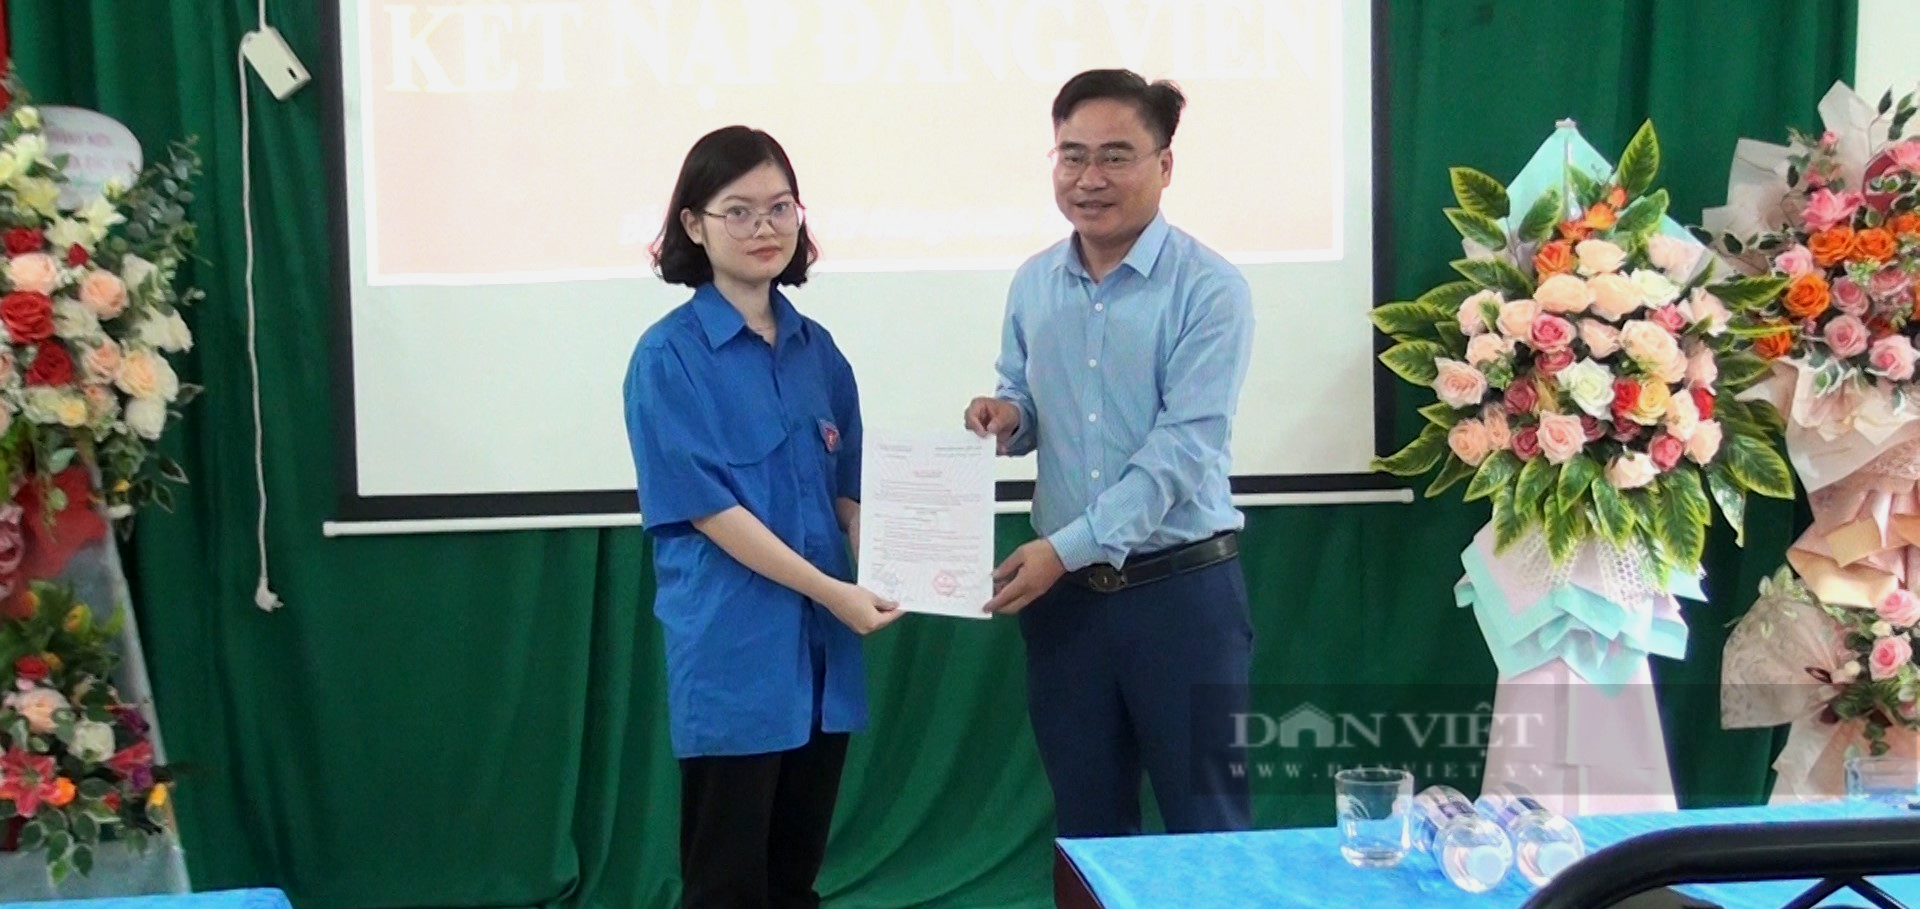 Học sinh THPT đầu tiên của huyện Bắc yên, tỉnh Sơn La được kết nạp Đảng - Ảnh 3.